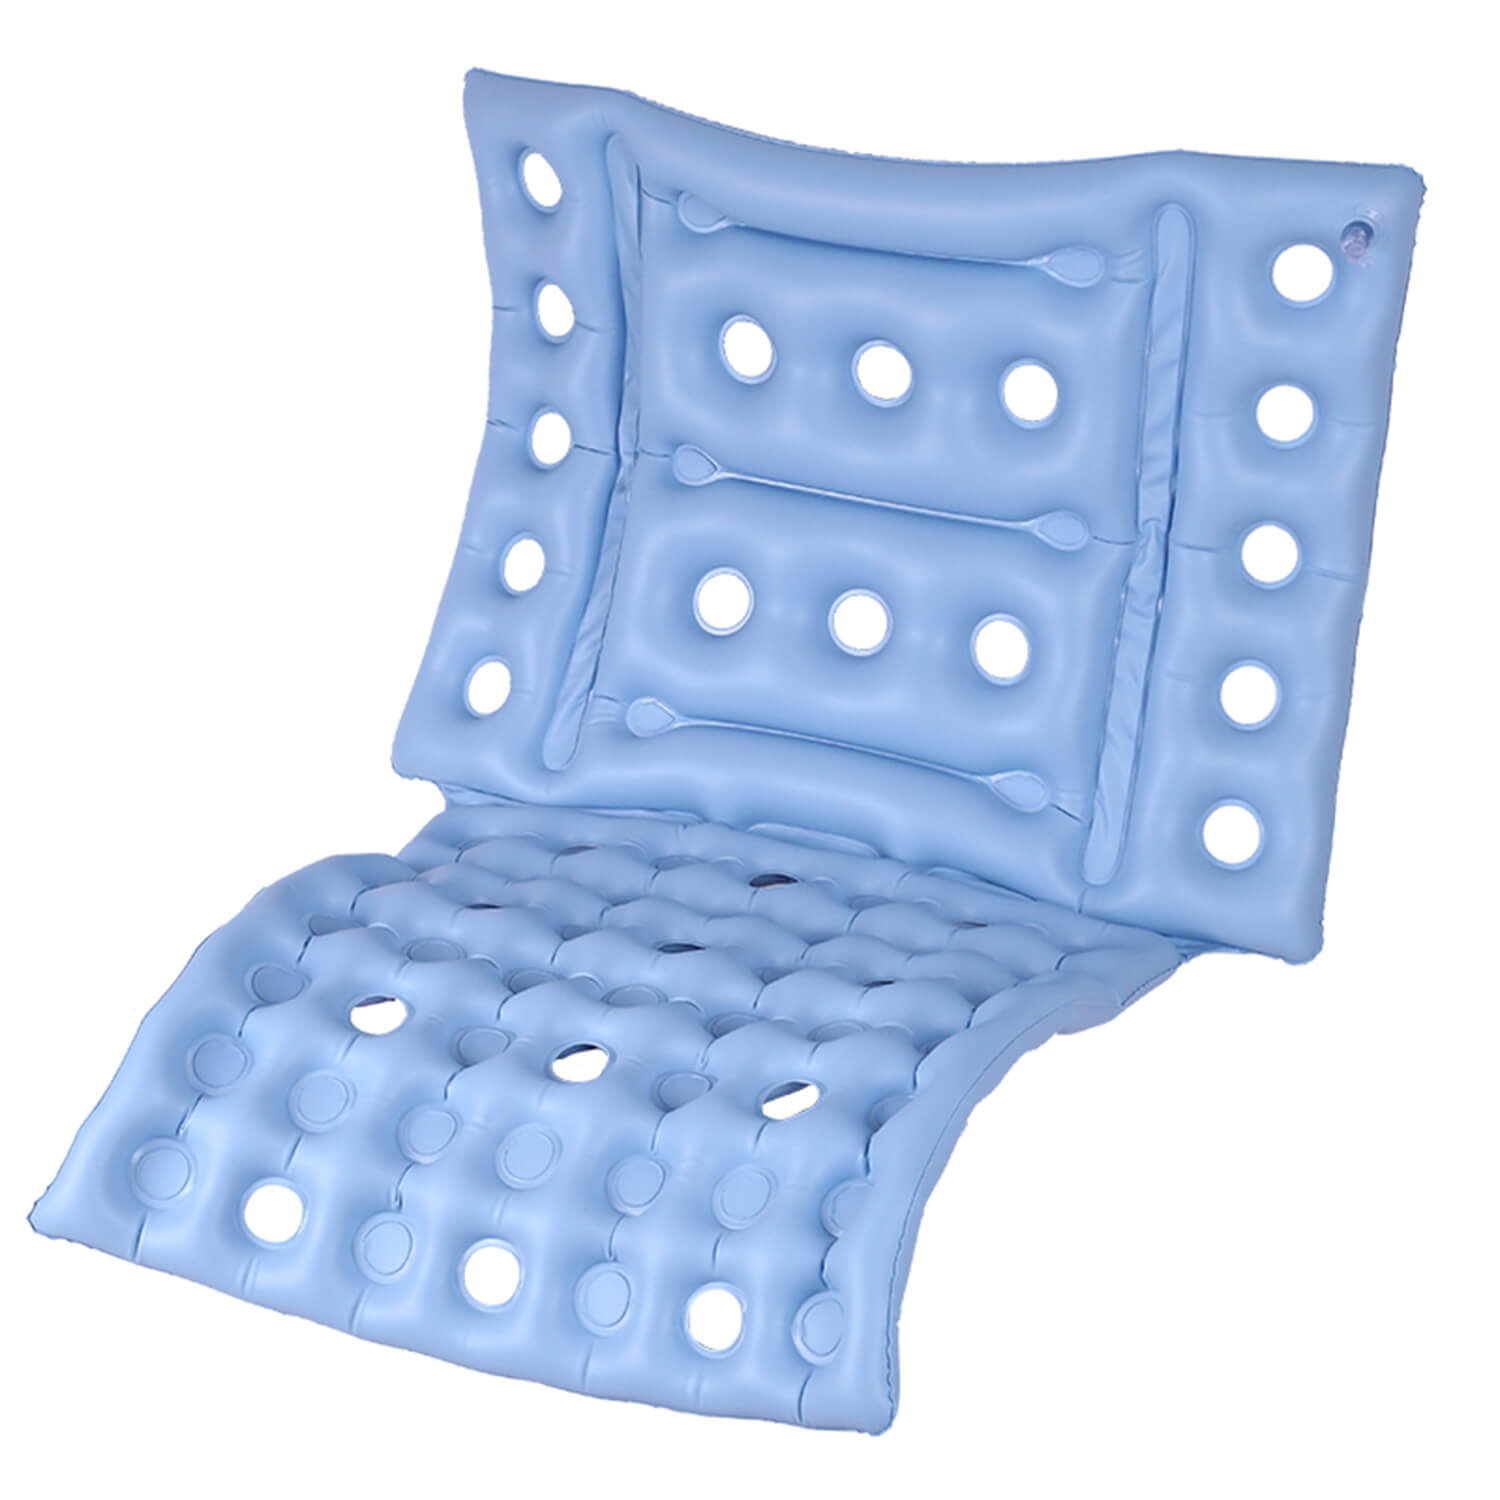 Topboutique Wheel Chair Air Cushion Inflatable Seat Mattress Anti